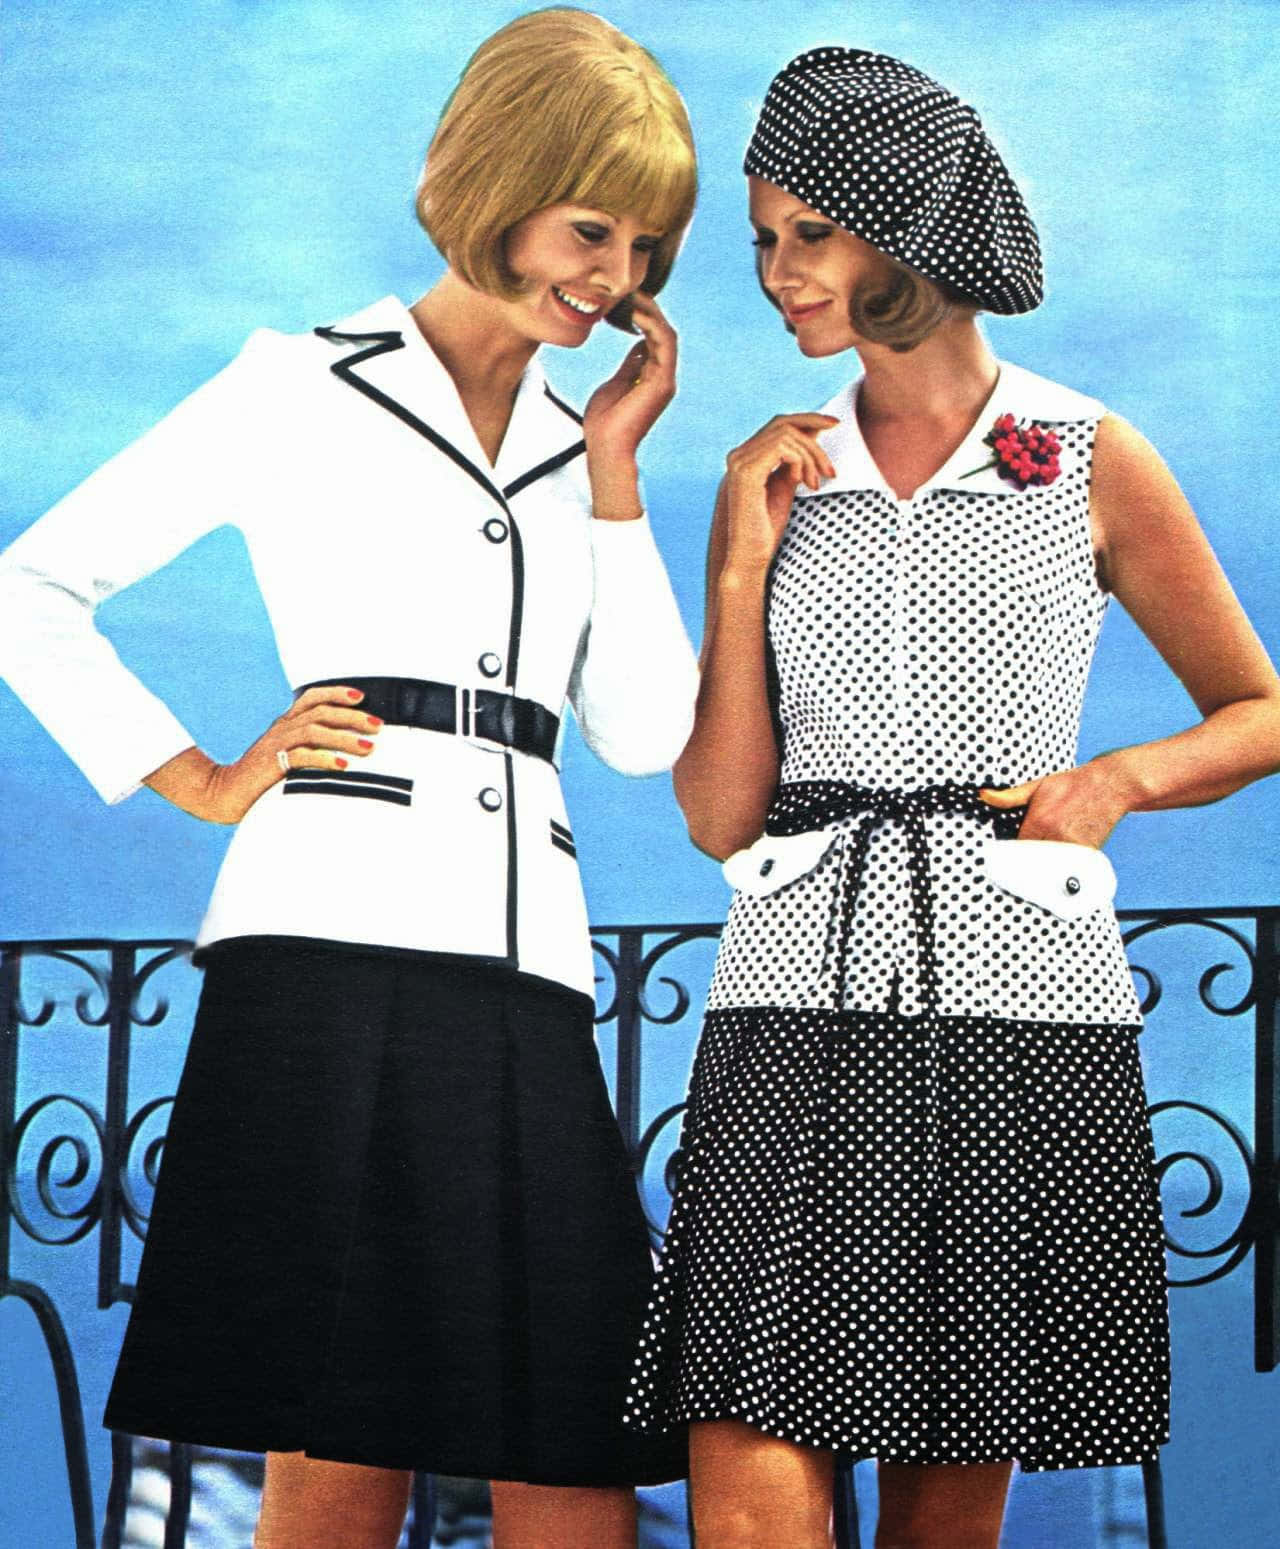 Two Women In A Polka Dot Dress